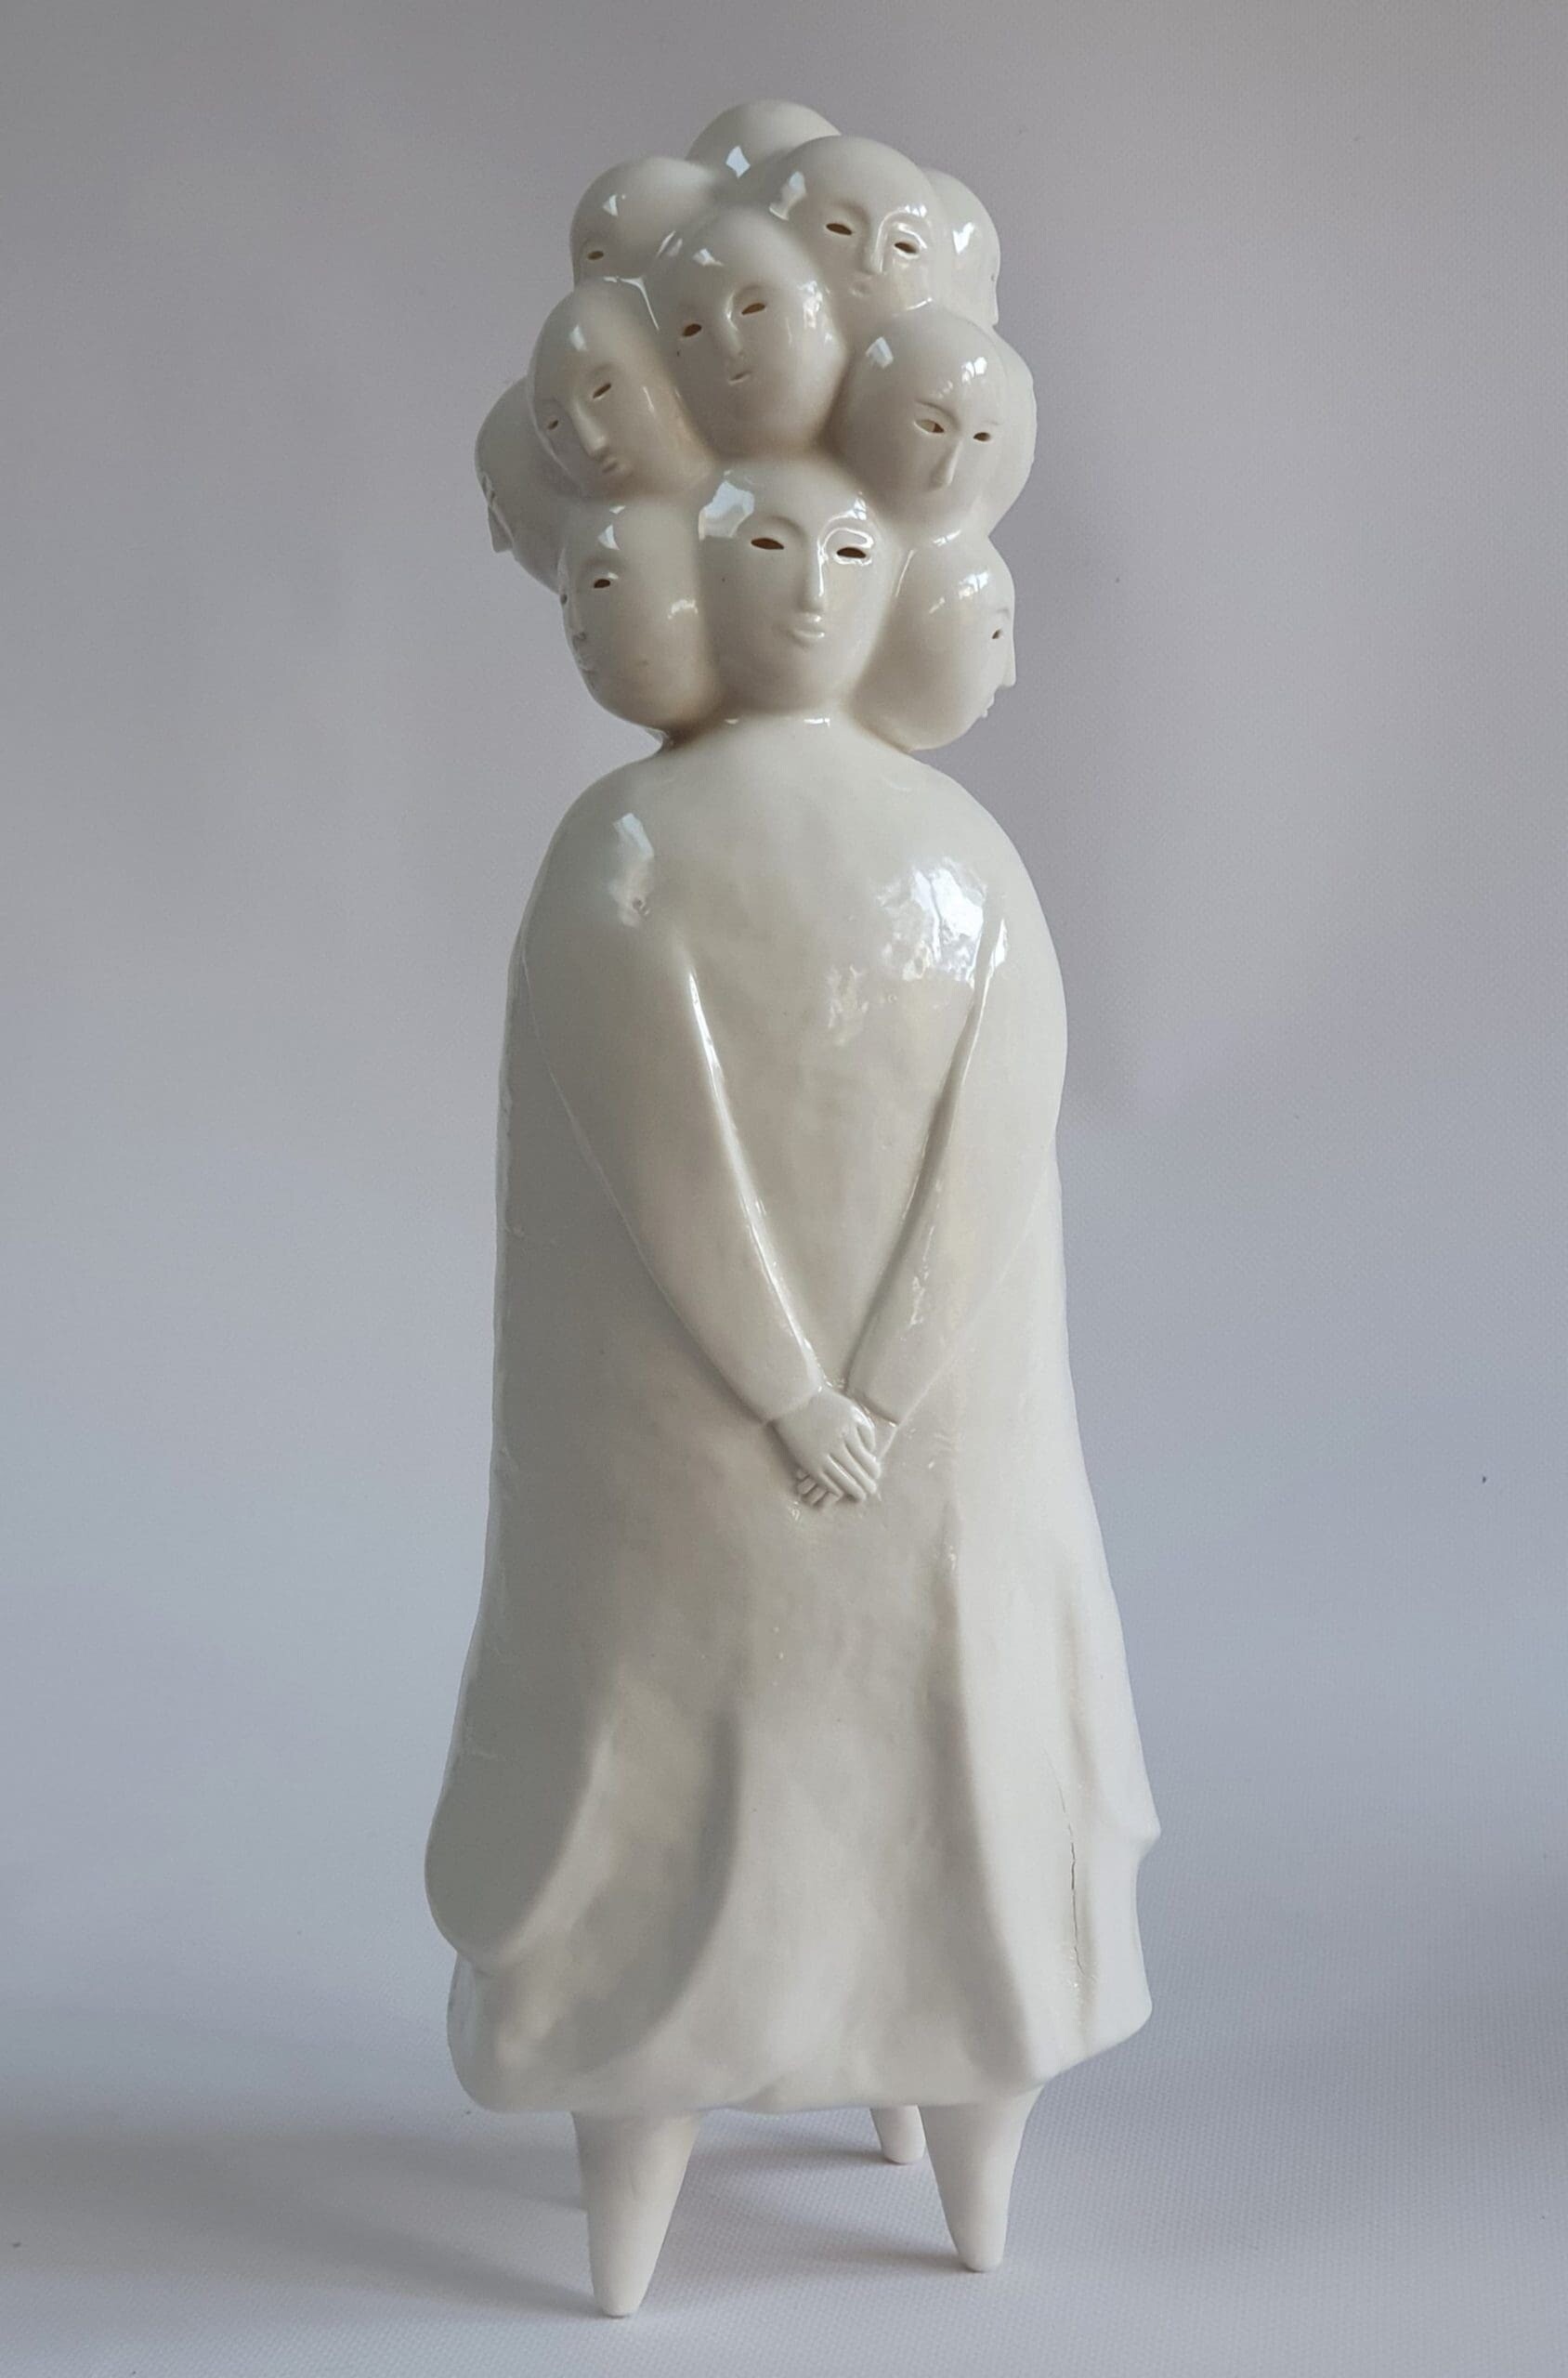 sophie woodrow figuras ceramica ejercito inquietante raro seres diminutos 6